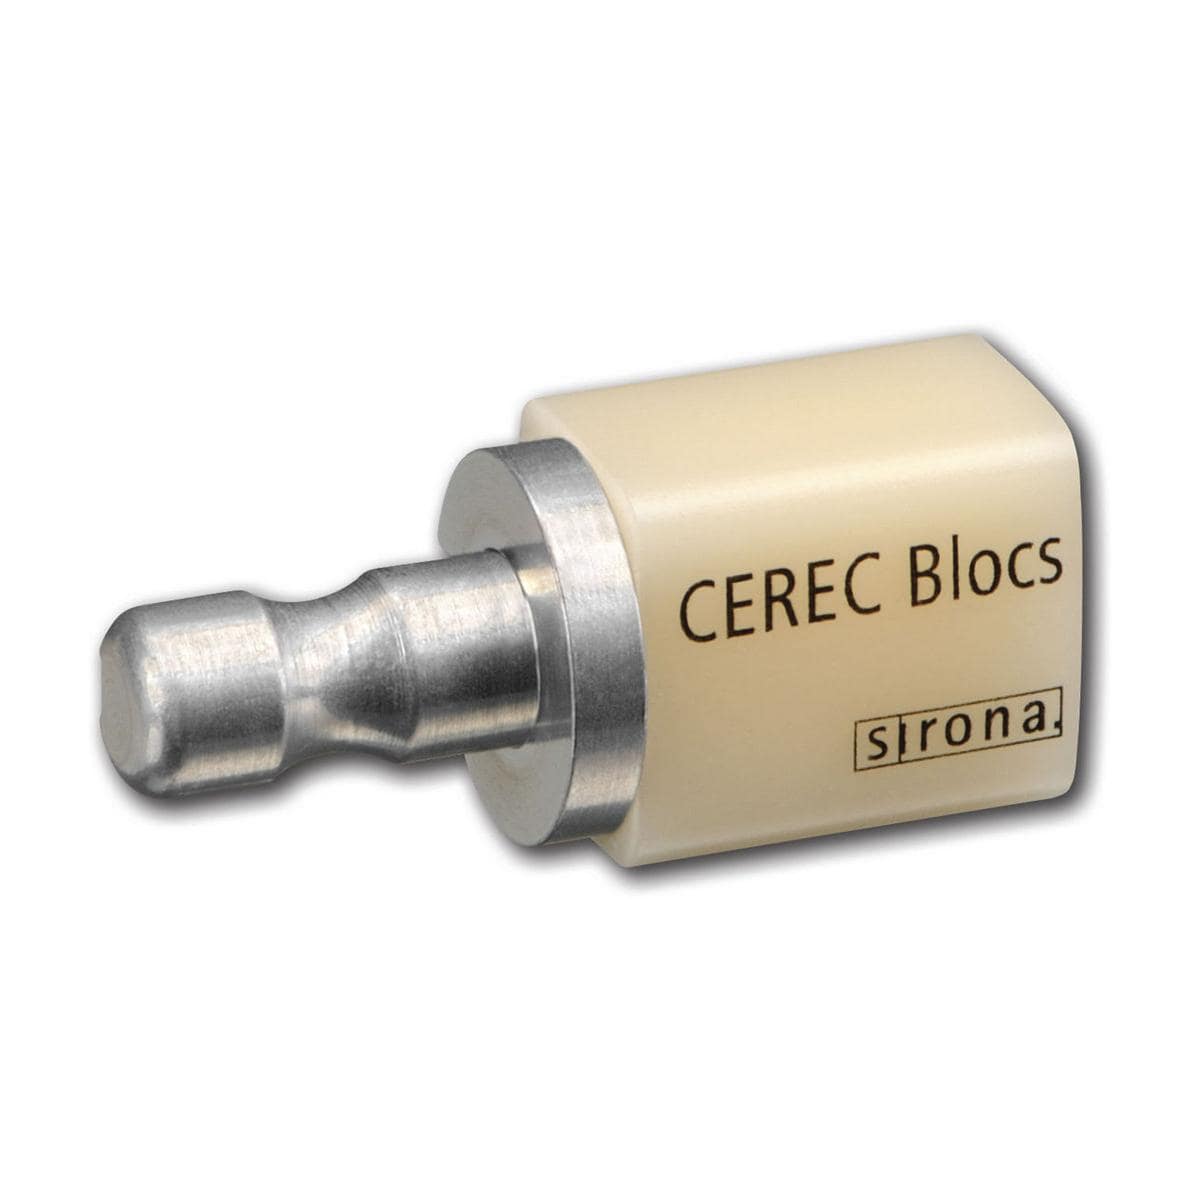 CEREC Blocs C 12 - A4C, Packung 8 Stück